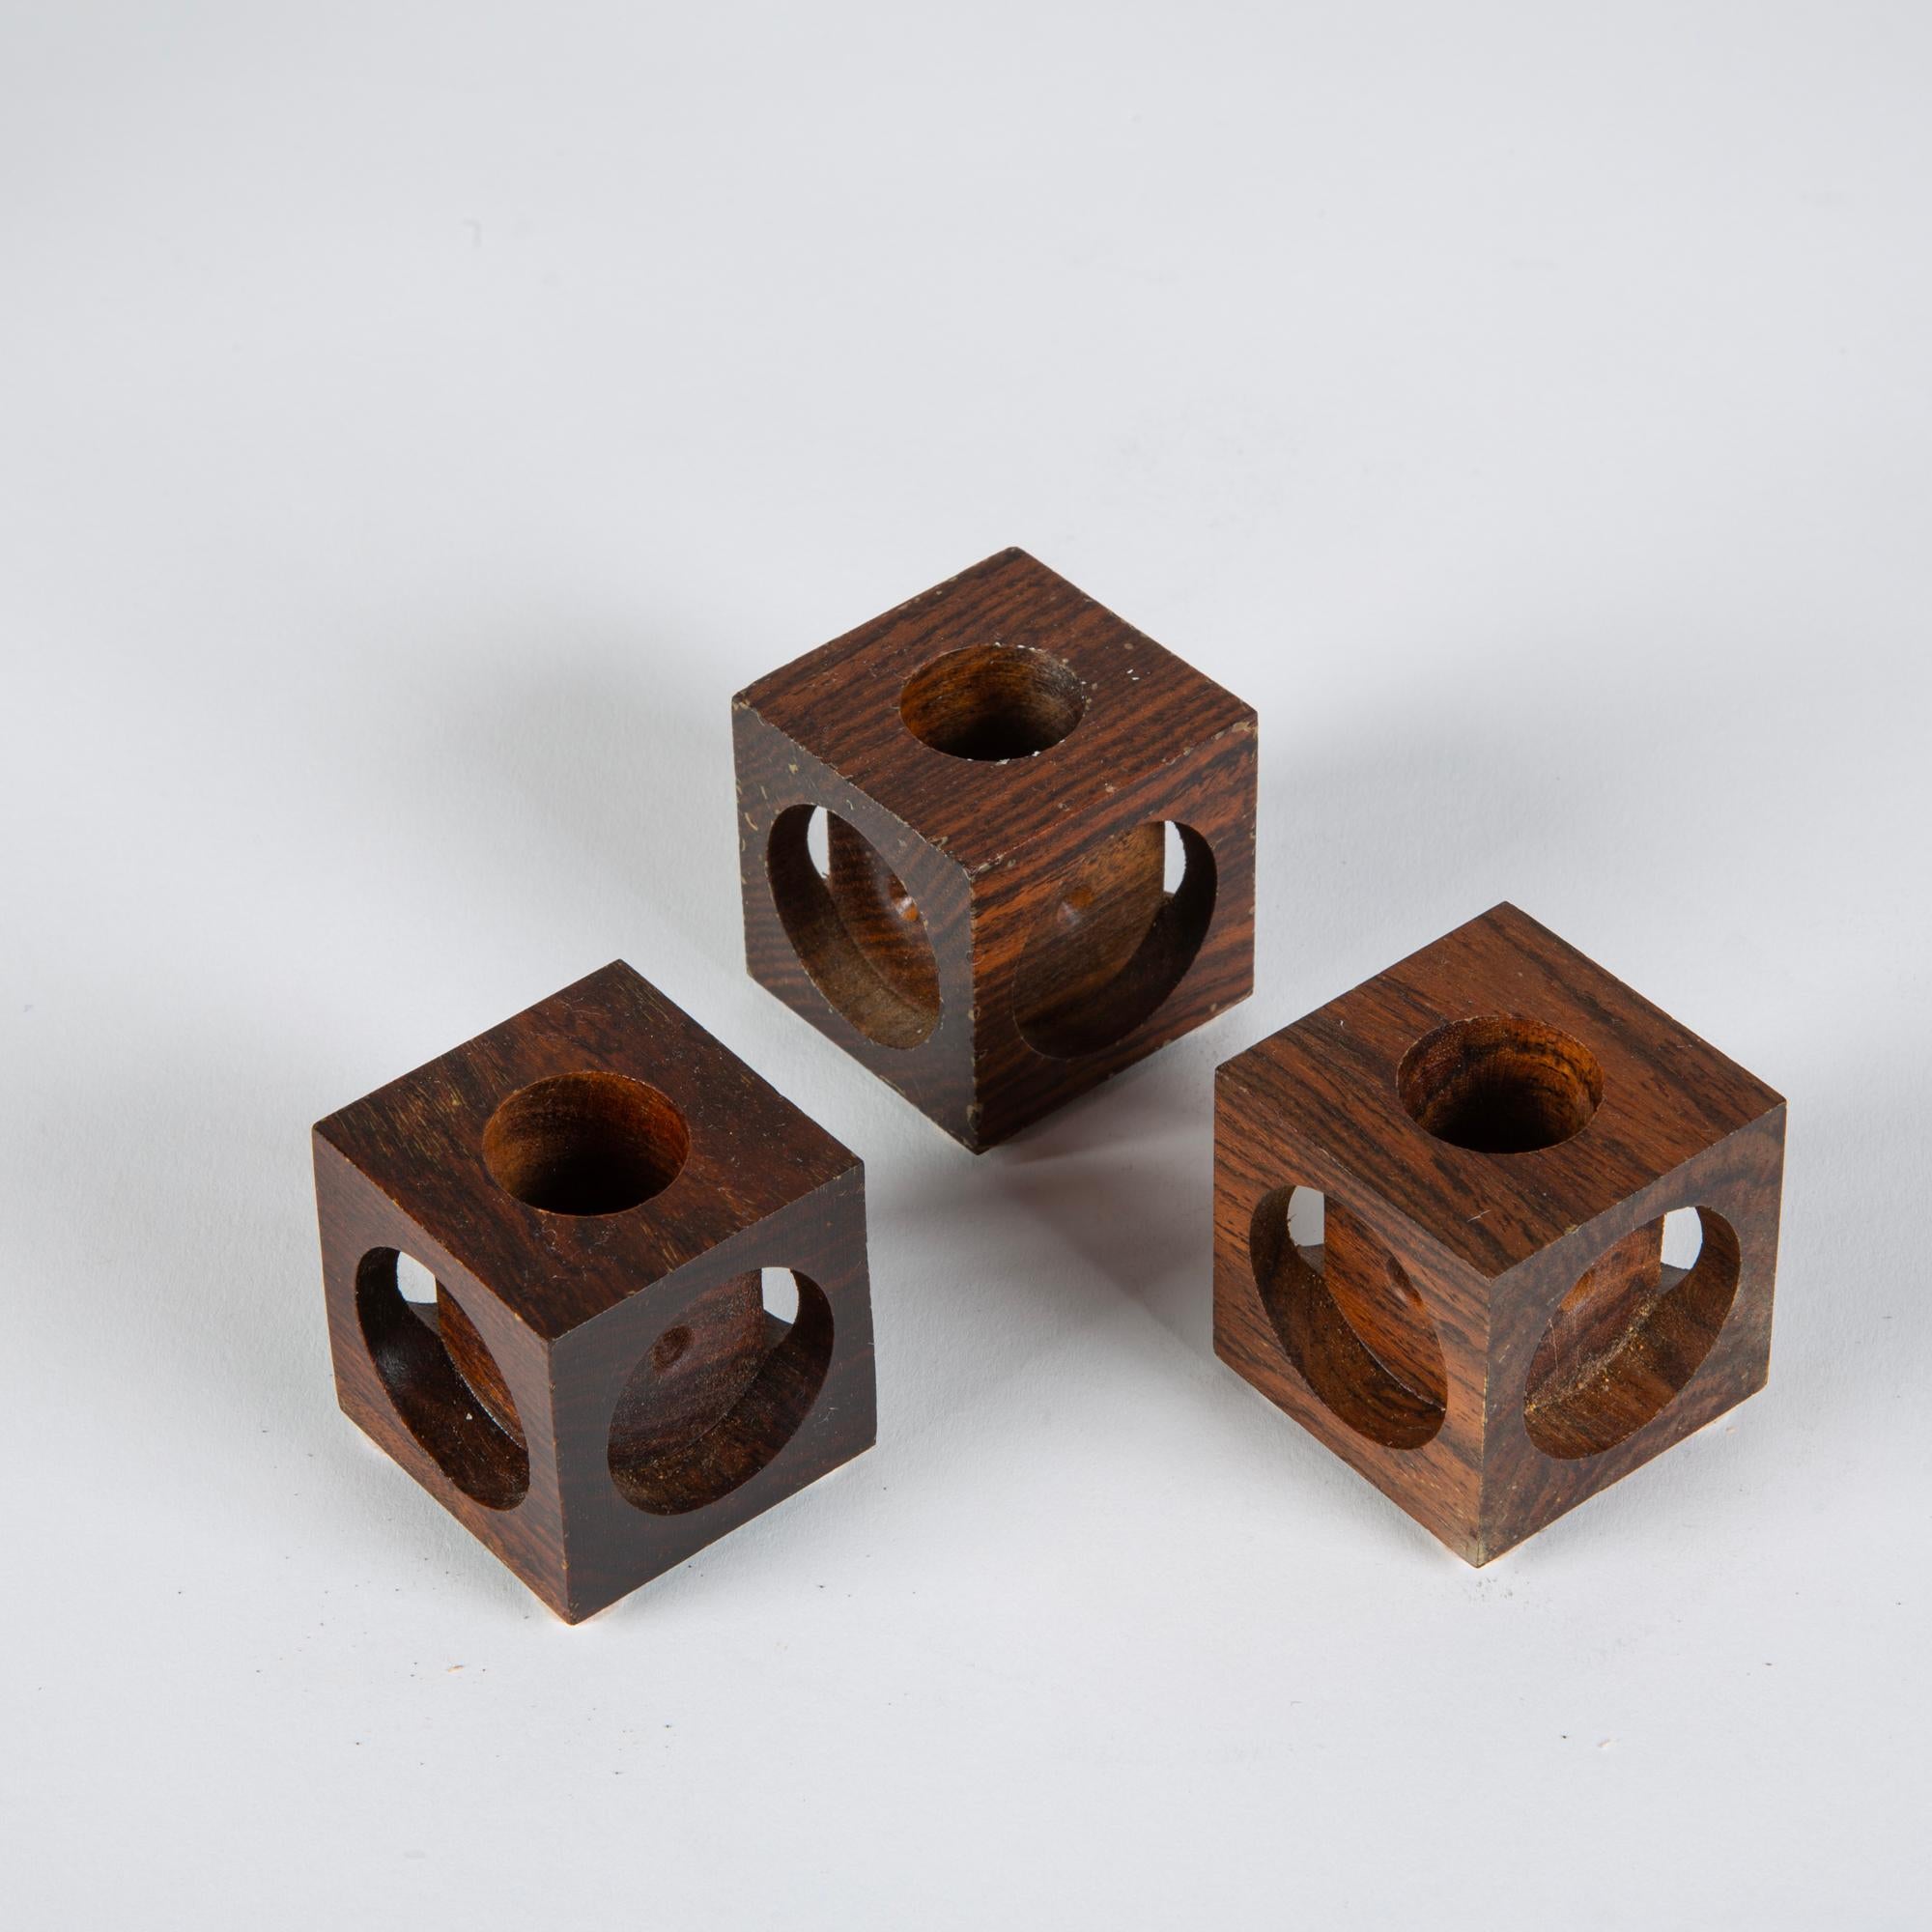 Ensemble de trois bougeoirs Don Shoemaker pour Señal en cocobolo. Les bougeoirs minimalistes en bois de rose, sculptés à la main, présentent un bloc géométrique avec des découpes circulaires sur chaque côté. Le sommet de chaque bloc comporte une